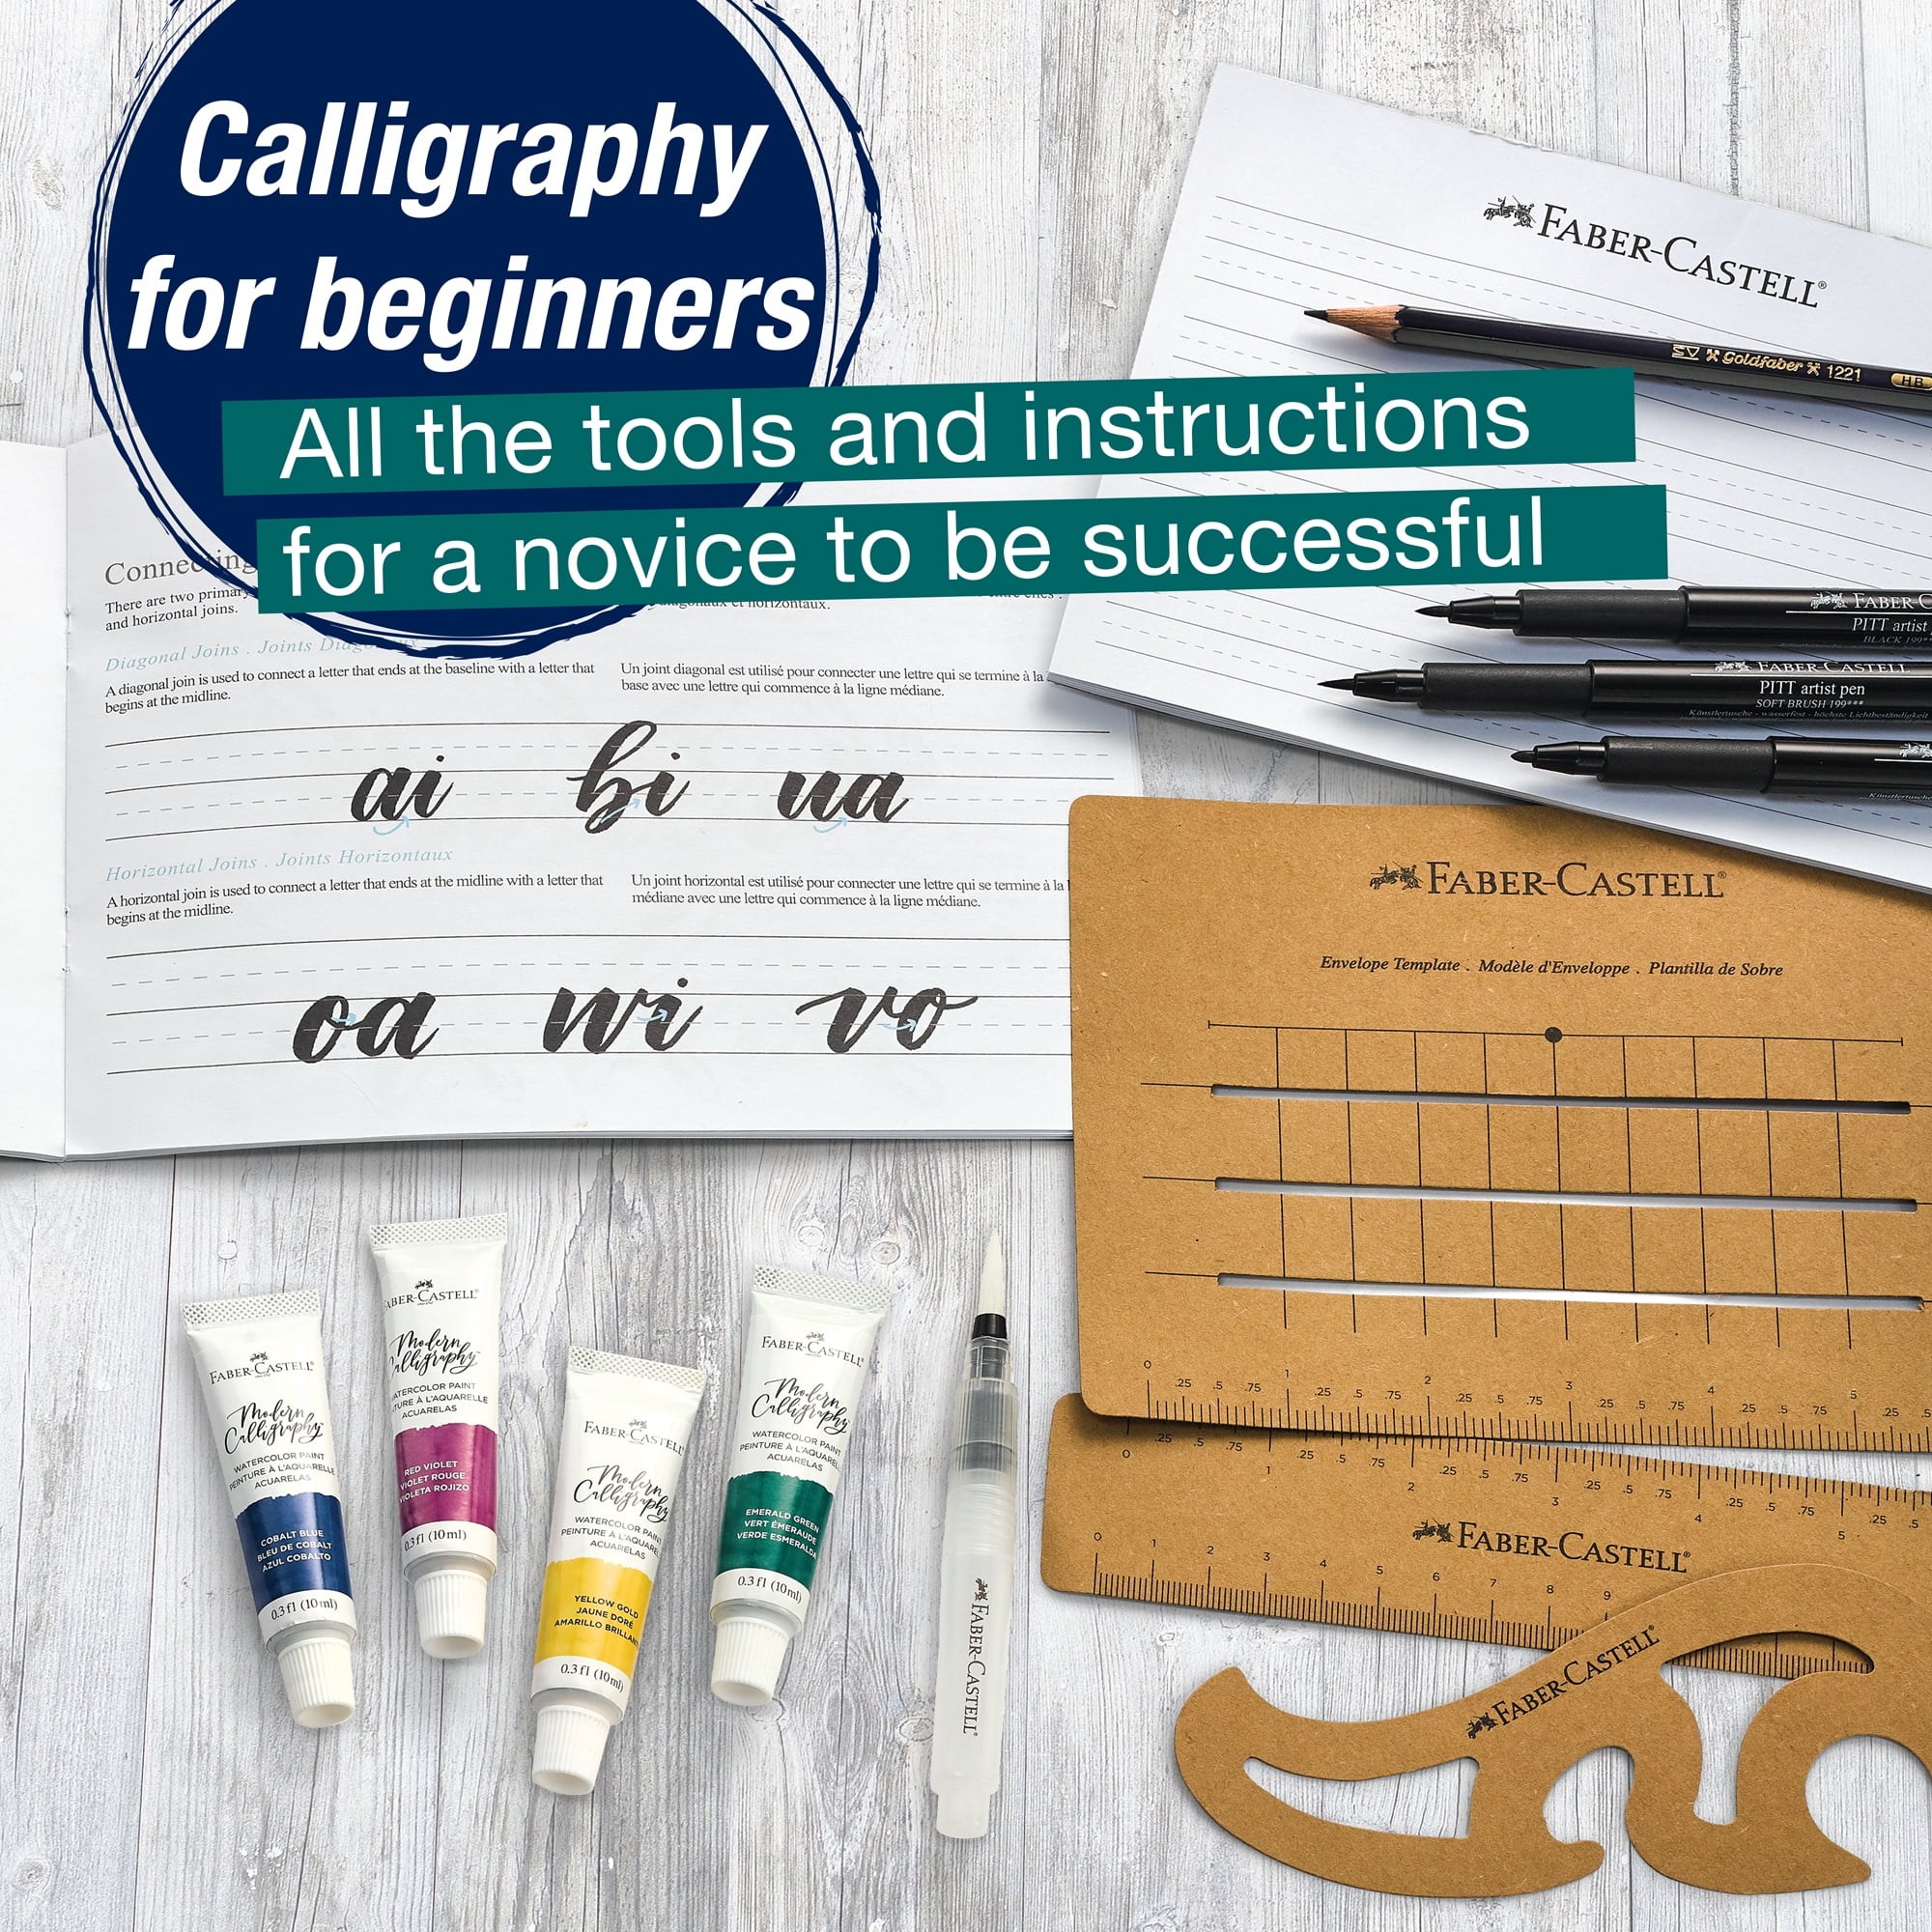 Faber-Castell Modern Calligraphy Kit - Lettering Set for Beginners